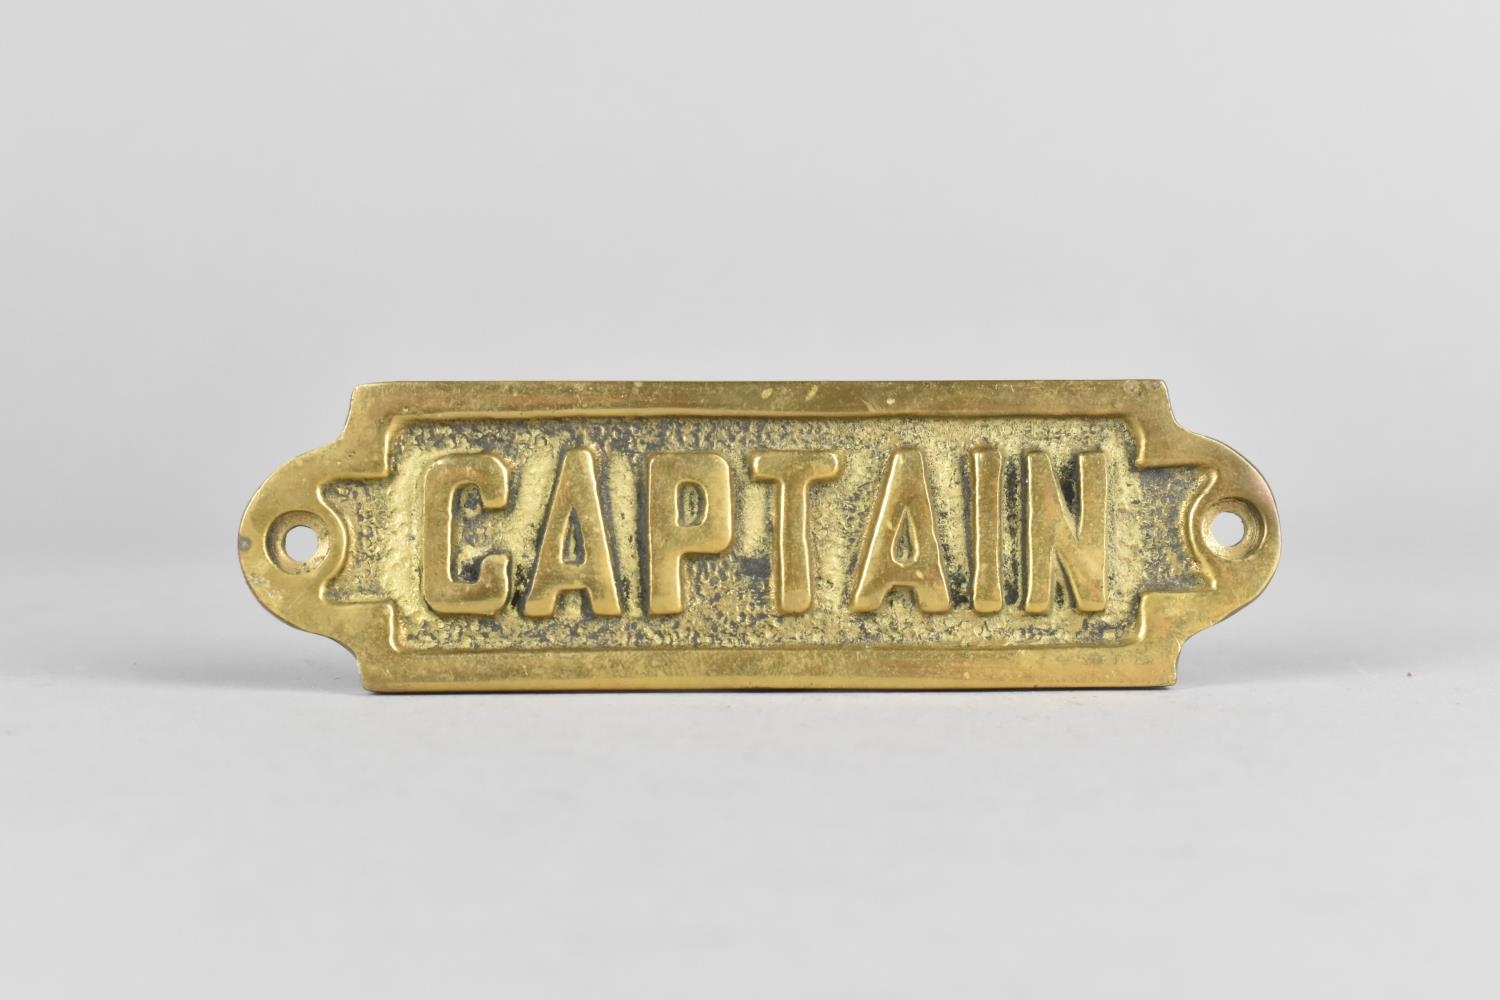 A Small Cast Brass Door Sign, "Captain", 11.5cms Long